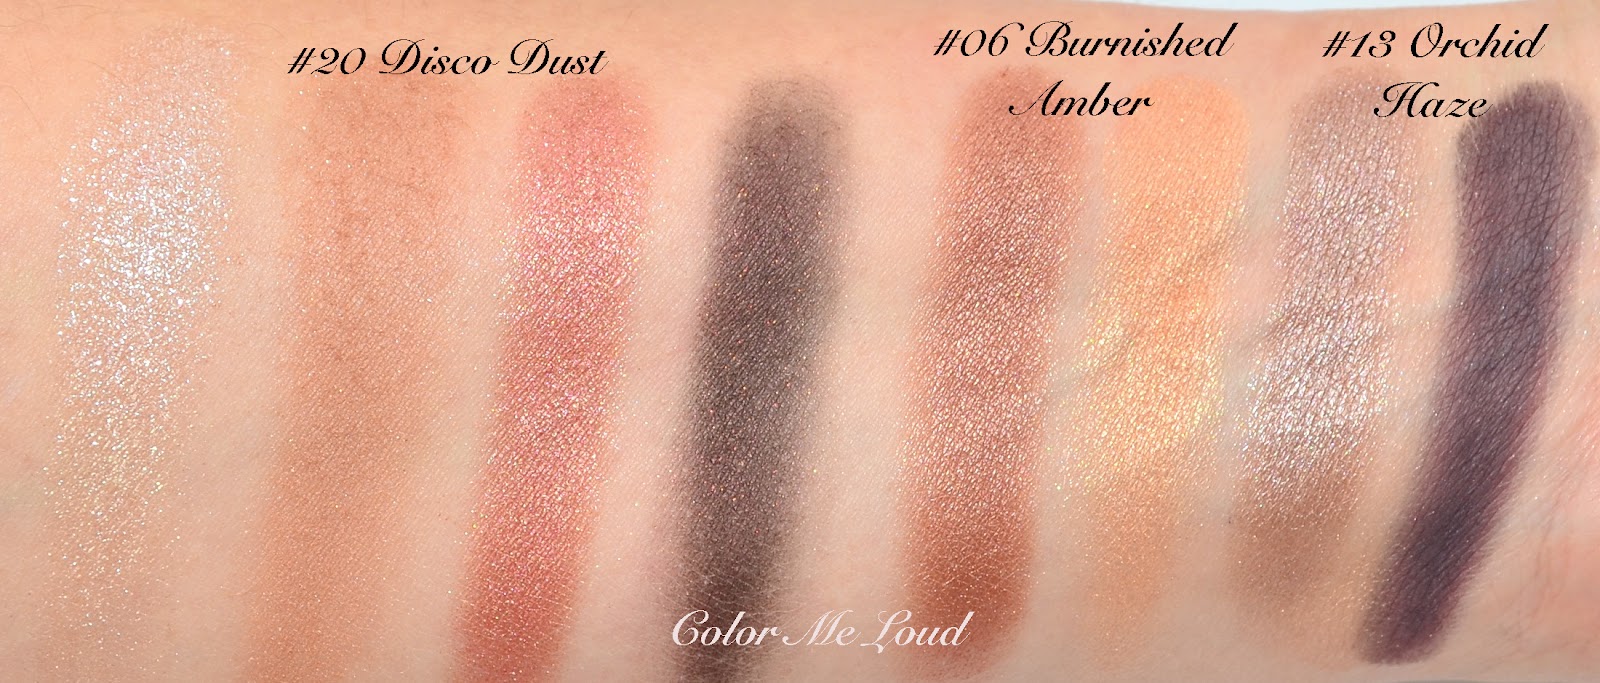 Tom Ford Eye Color Quad #20 Dust, Review, Comparison & FOTD | Color Me Loud